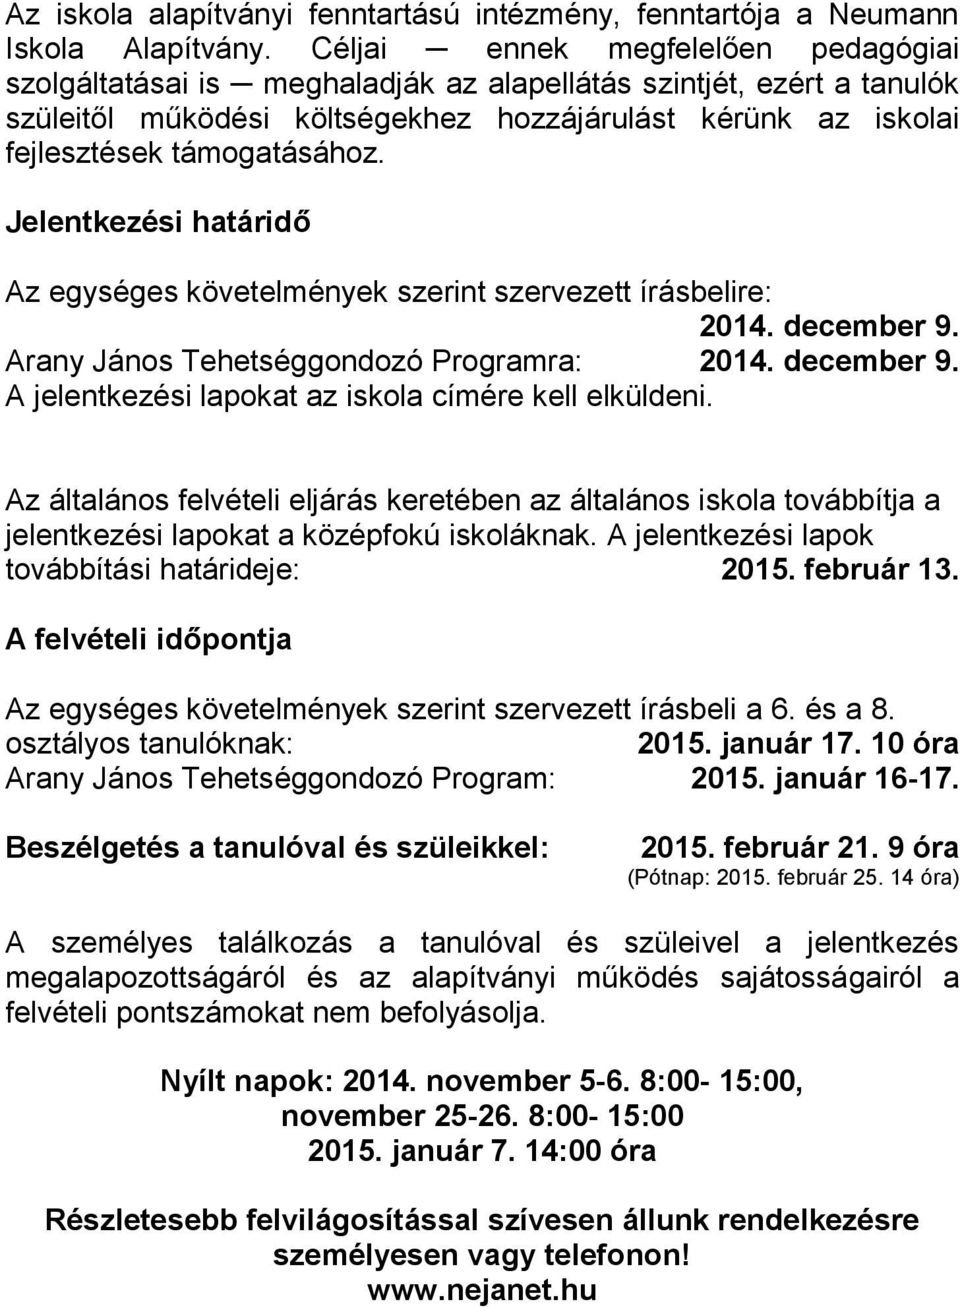 Jelentkezési határidő Az egységes követelmények szerint szervezett írásbelire: 2014. december 9. Arany János Tehetséggondozó Programra: 2014. december 9. A jelentkezési lapokat az iskola címére kell elküldeni.